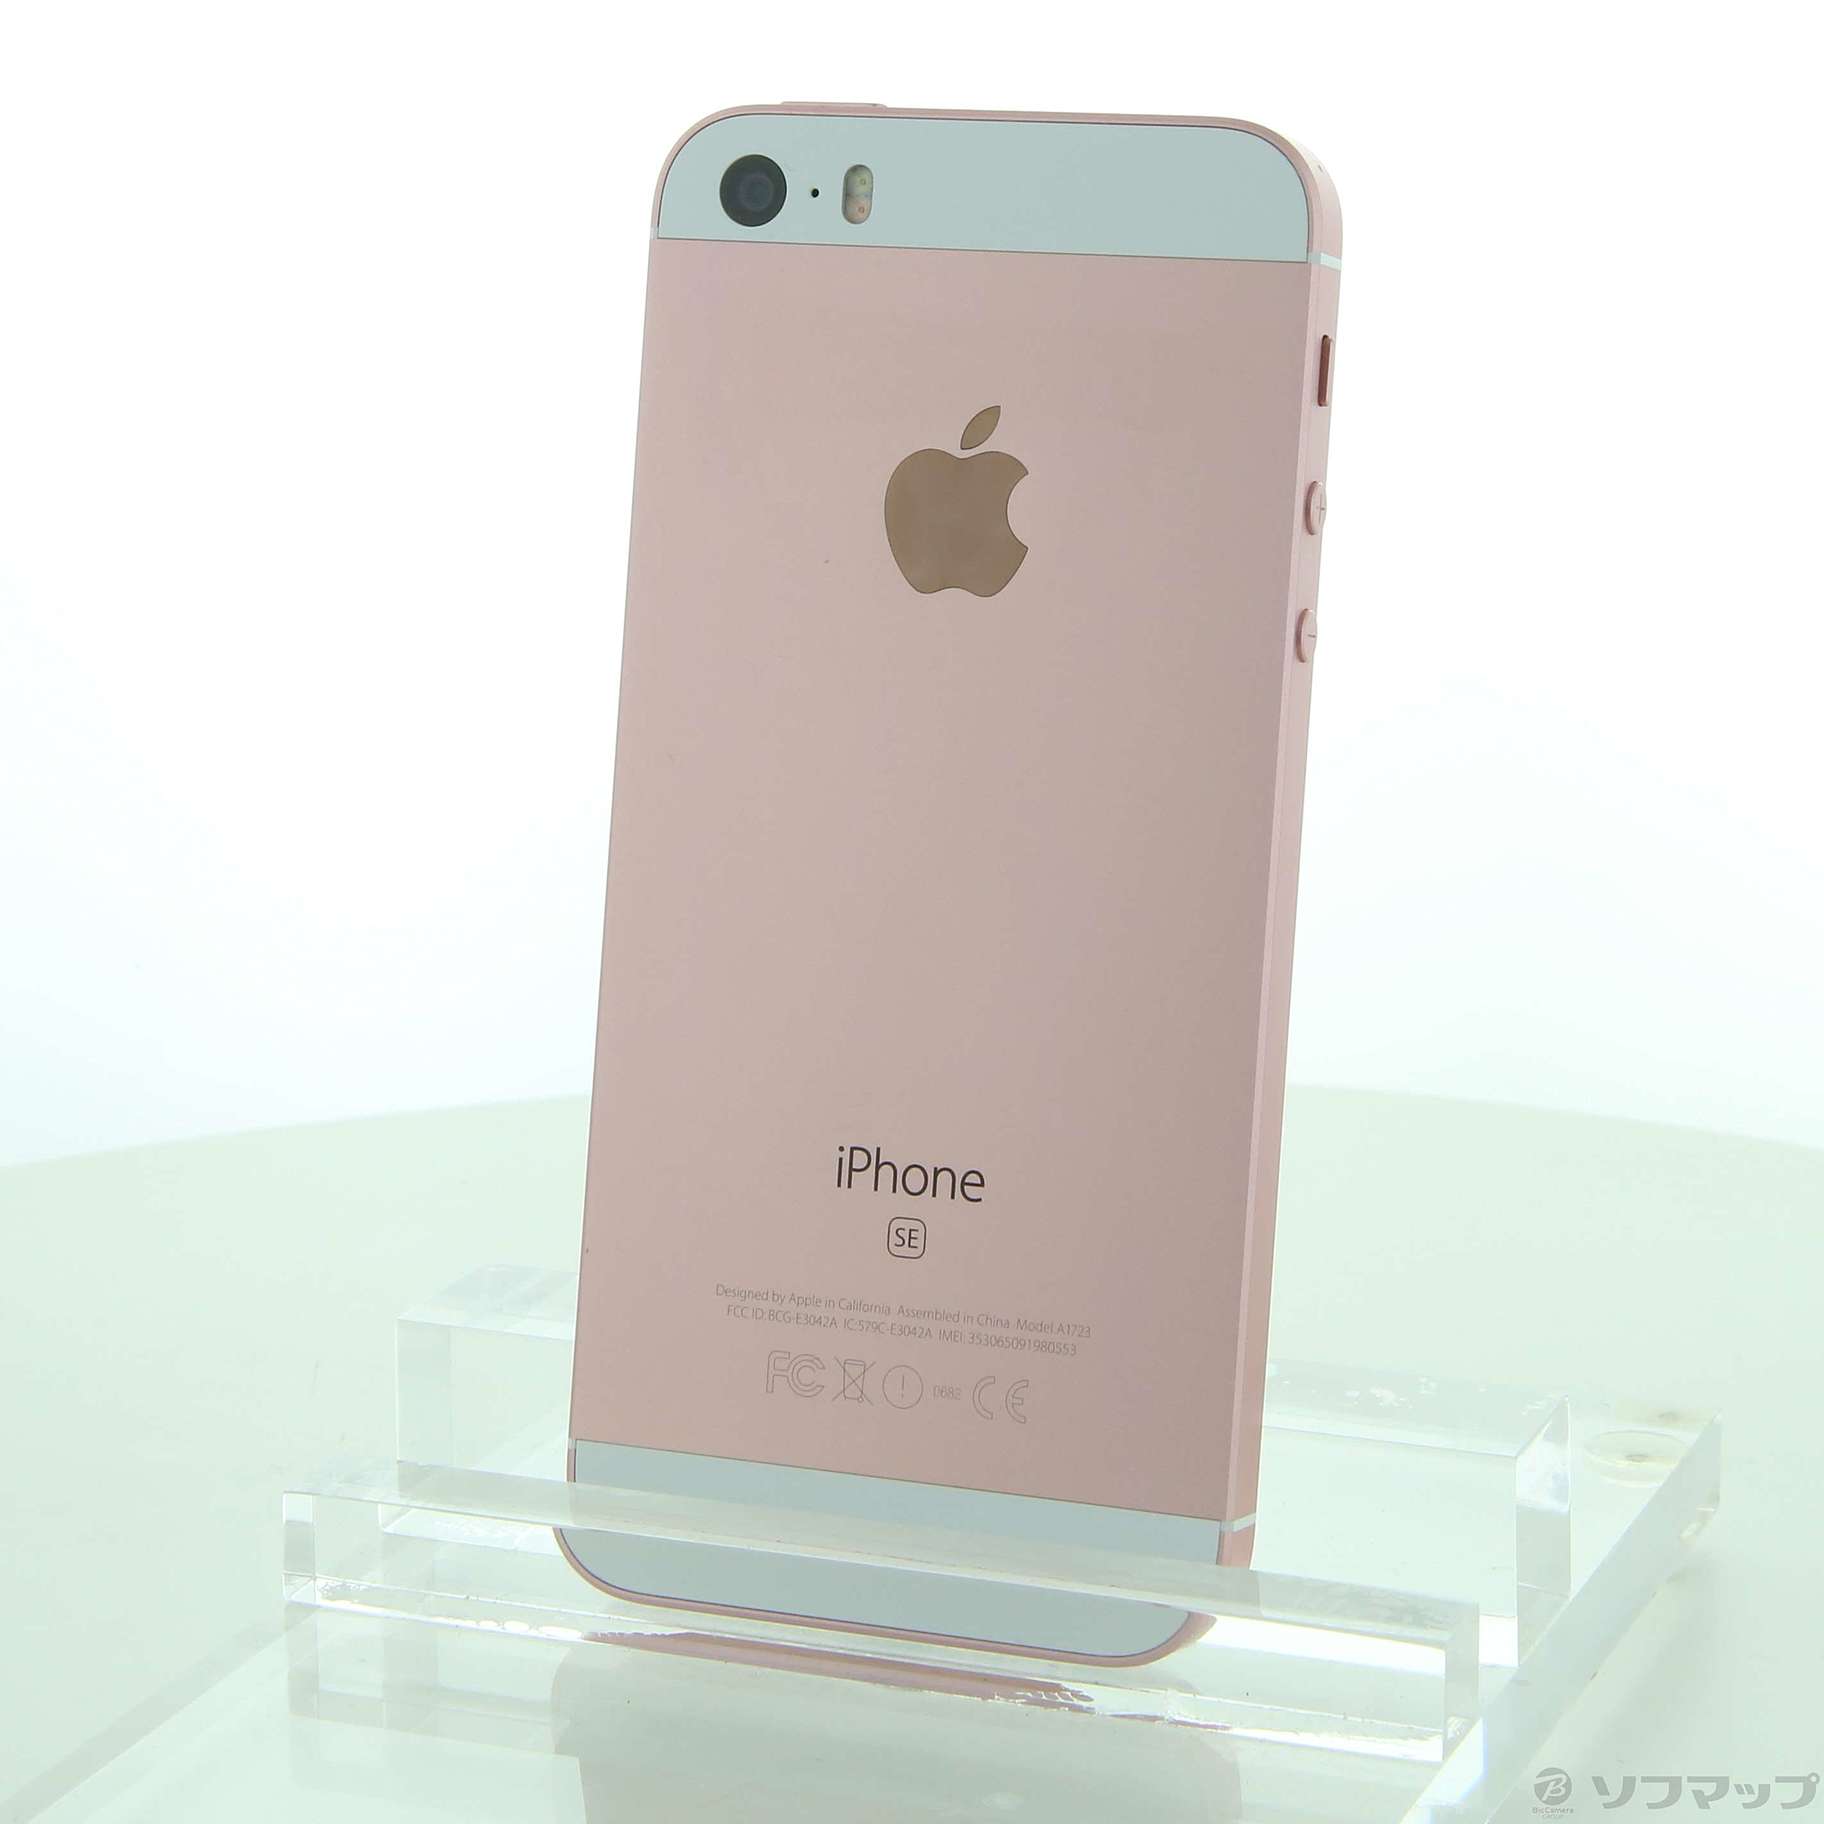 iPhone SE 32 GB ローズゴールド (第一世代)